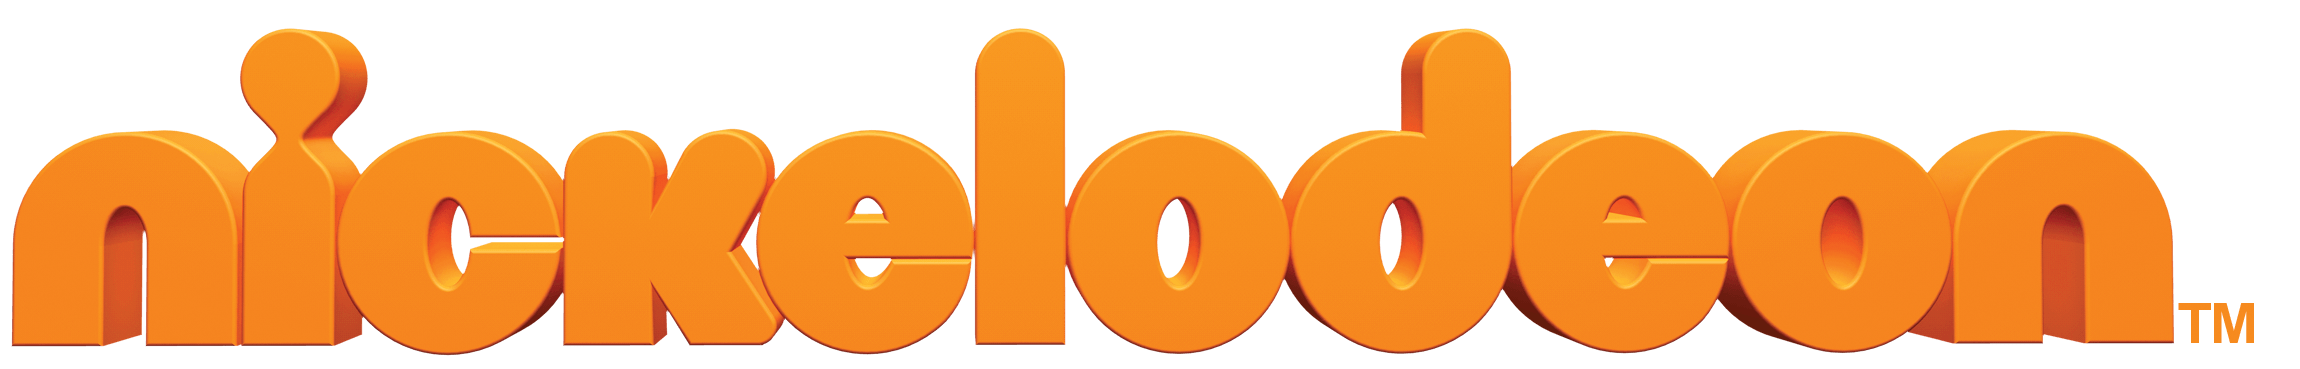 Nickelodeon Logo - Nickelodeon Logo Png Transparent PNG Logos